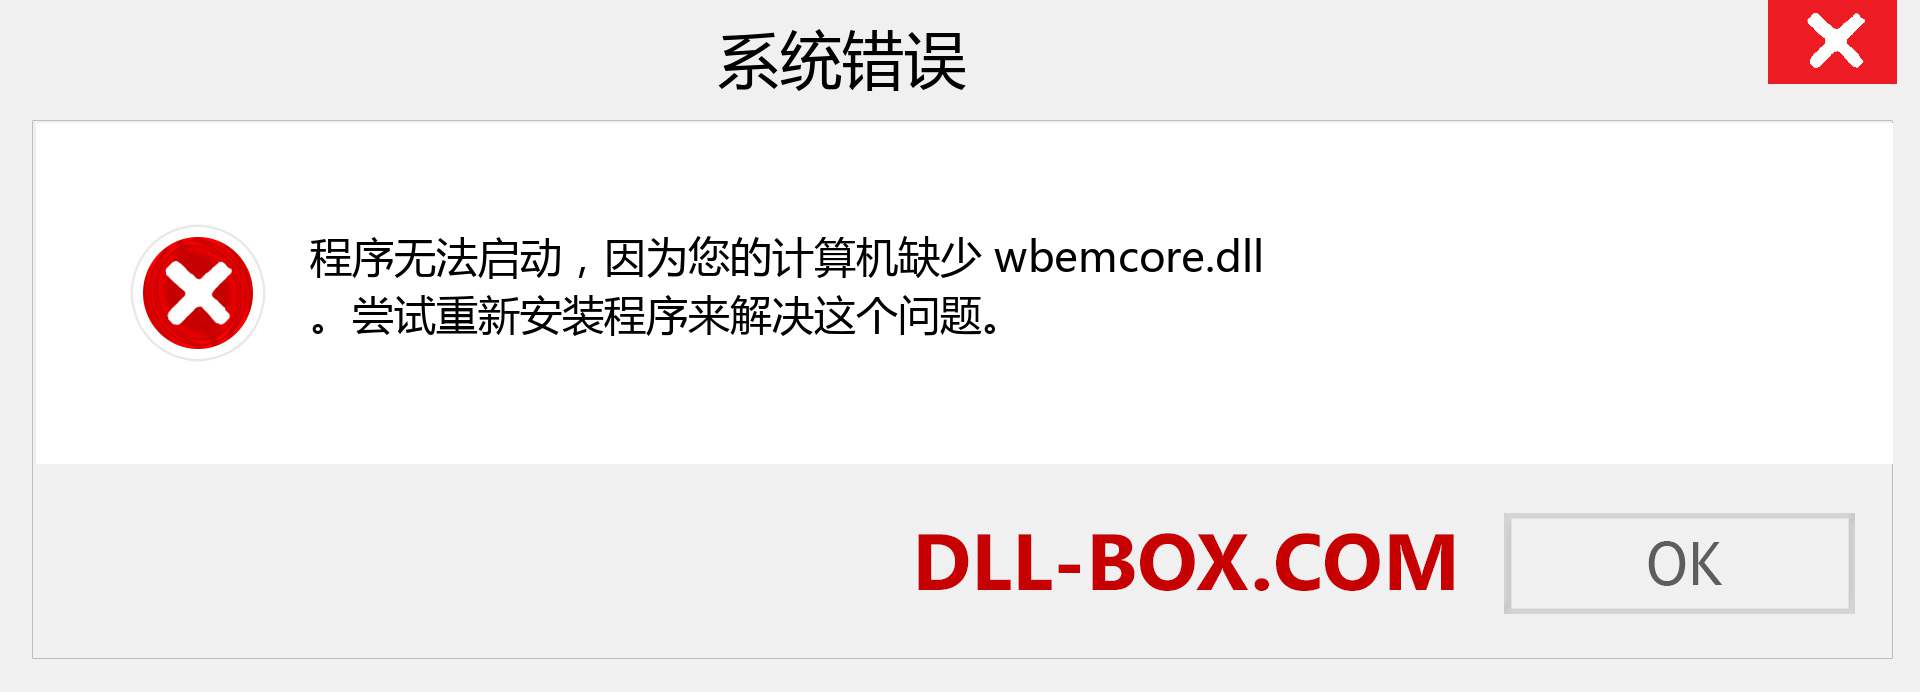 wbemcore.dll 文件丢失？。 适用于 Windows 7、8、10 的下载 - 修复 Windows、照片、图像上的 wbemcore dll 丢失错误